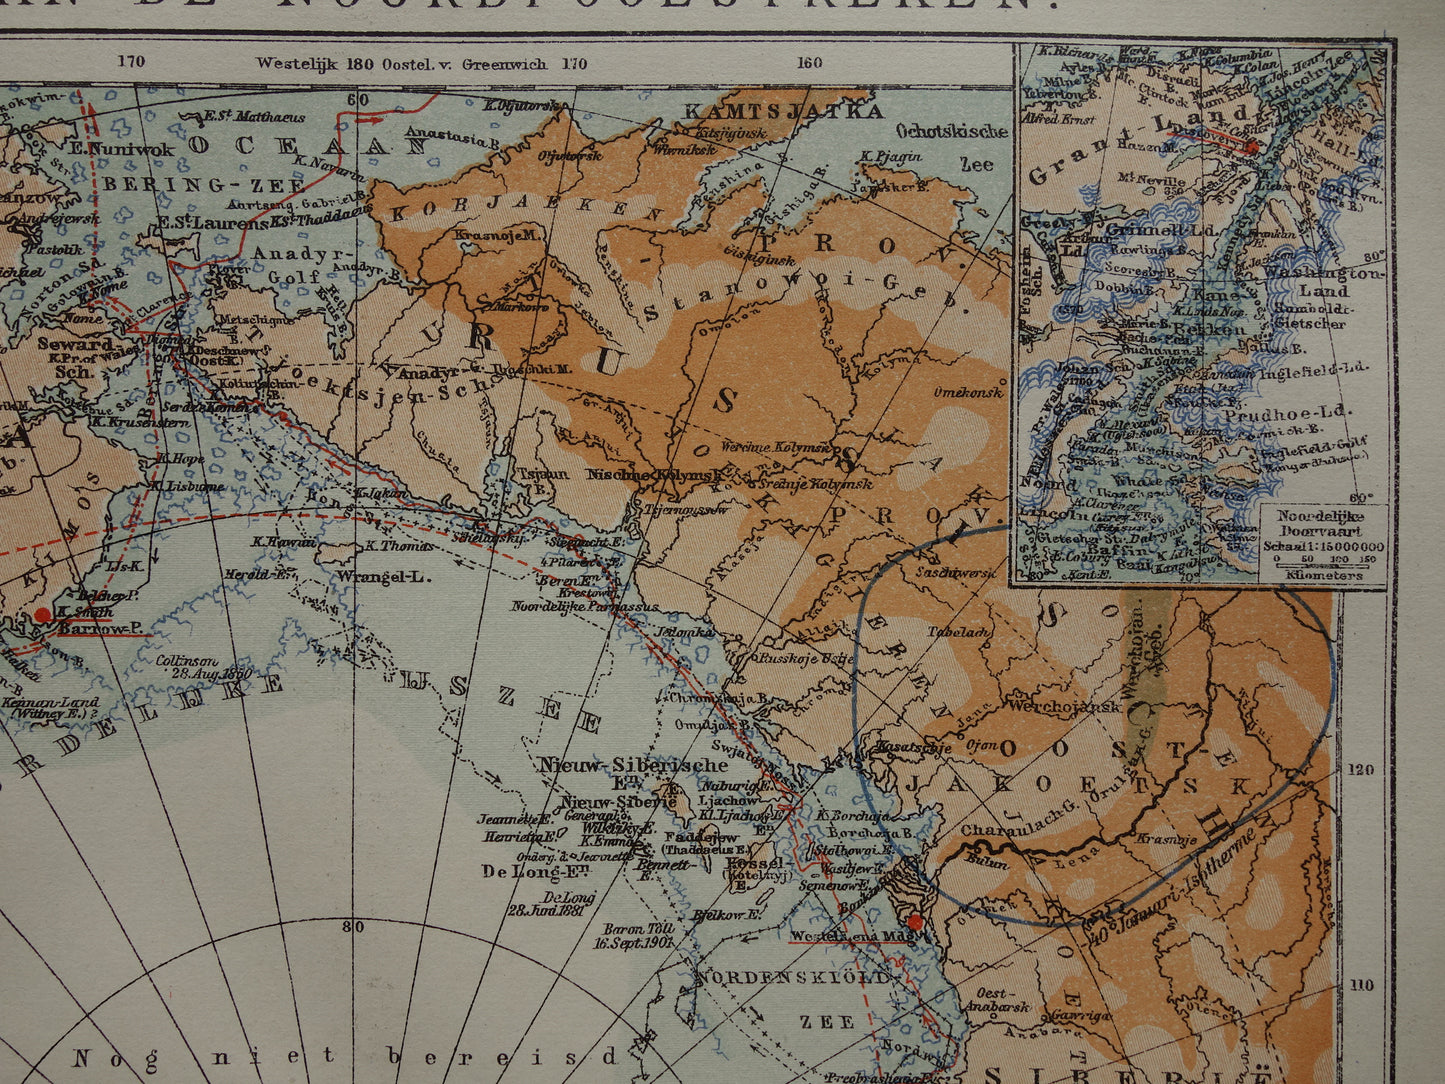 Oude kaart van de Noordpool 1920 originele antieke Nederlandse landkaart Groenland Spitsbergen